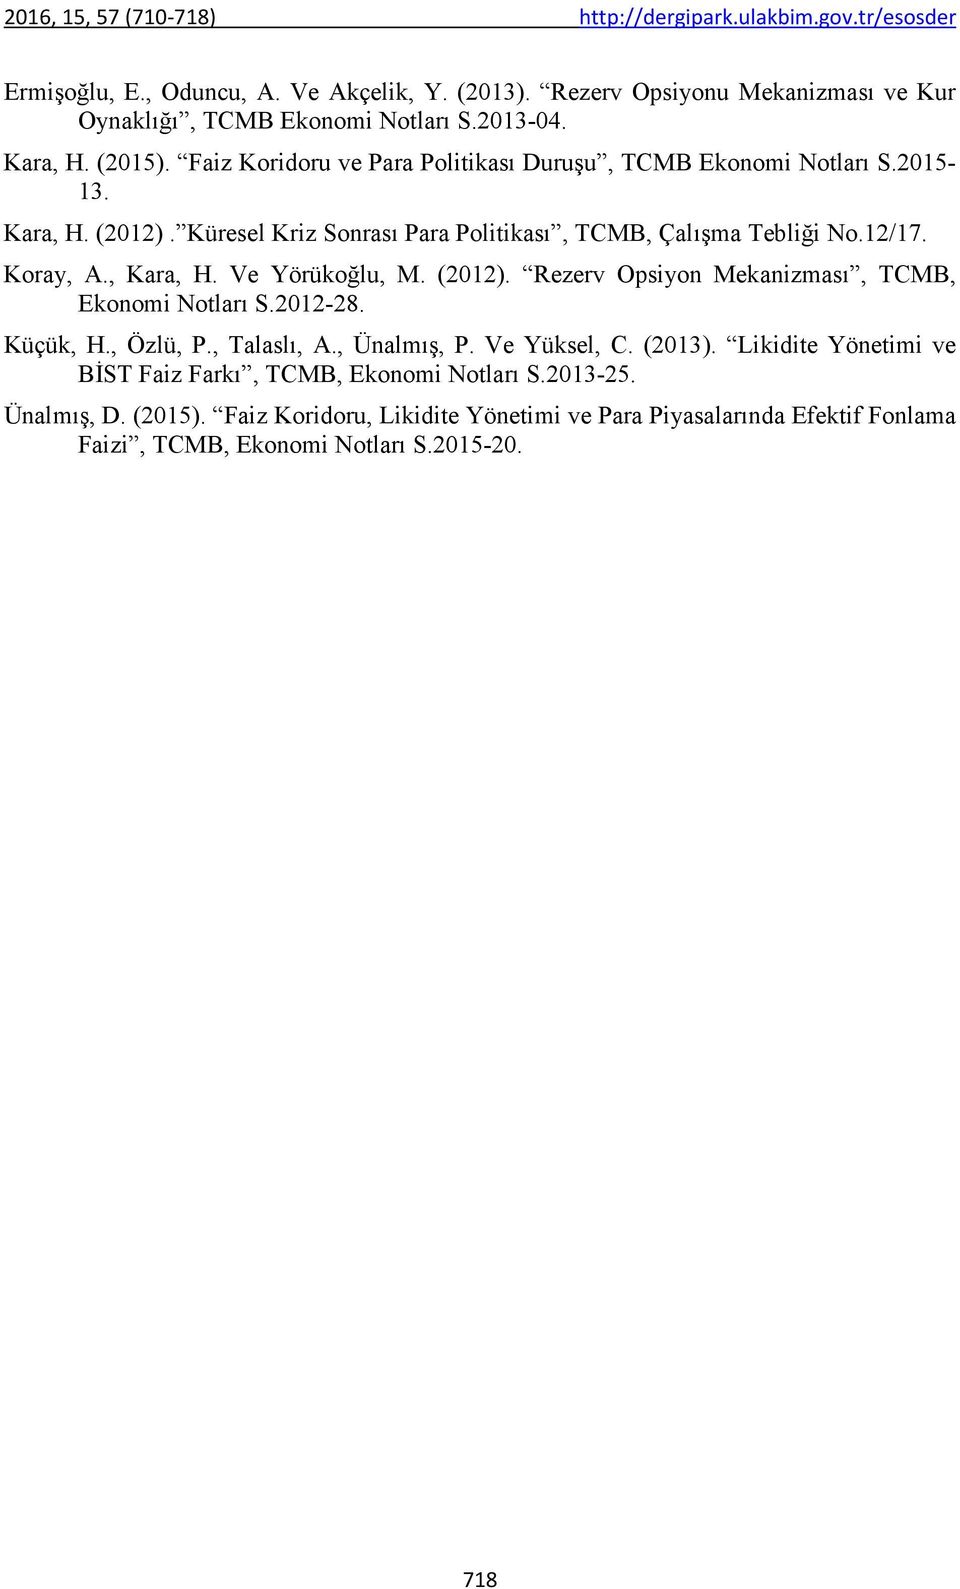 , Kara, H. Ve Yörükoğlu, M. (2012). Rezerv Opsiyon Mekanizması, TCMB, Ekonomi Notları S.2012-28. Küçük, H., Özlü, P., Talaslı, A., Ünalmış, P. Ve Yüksel, C. (2013).